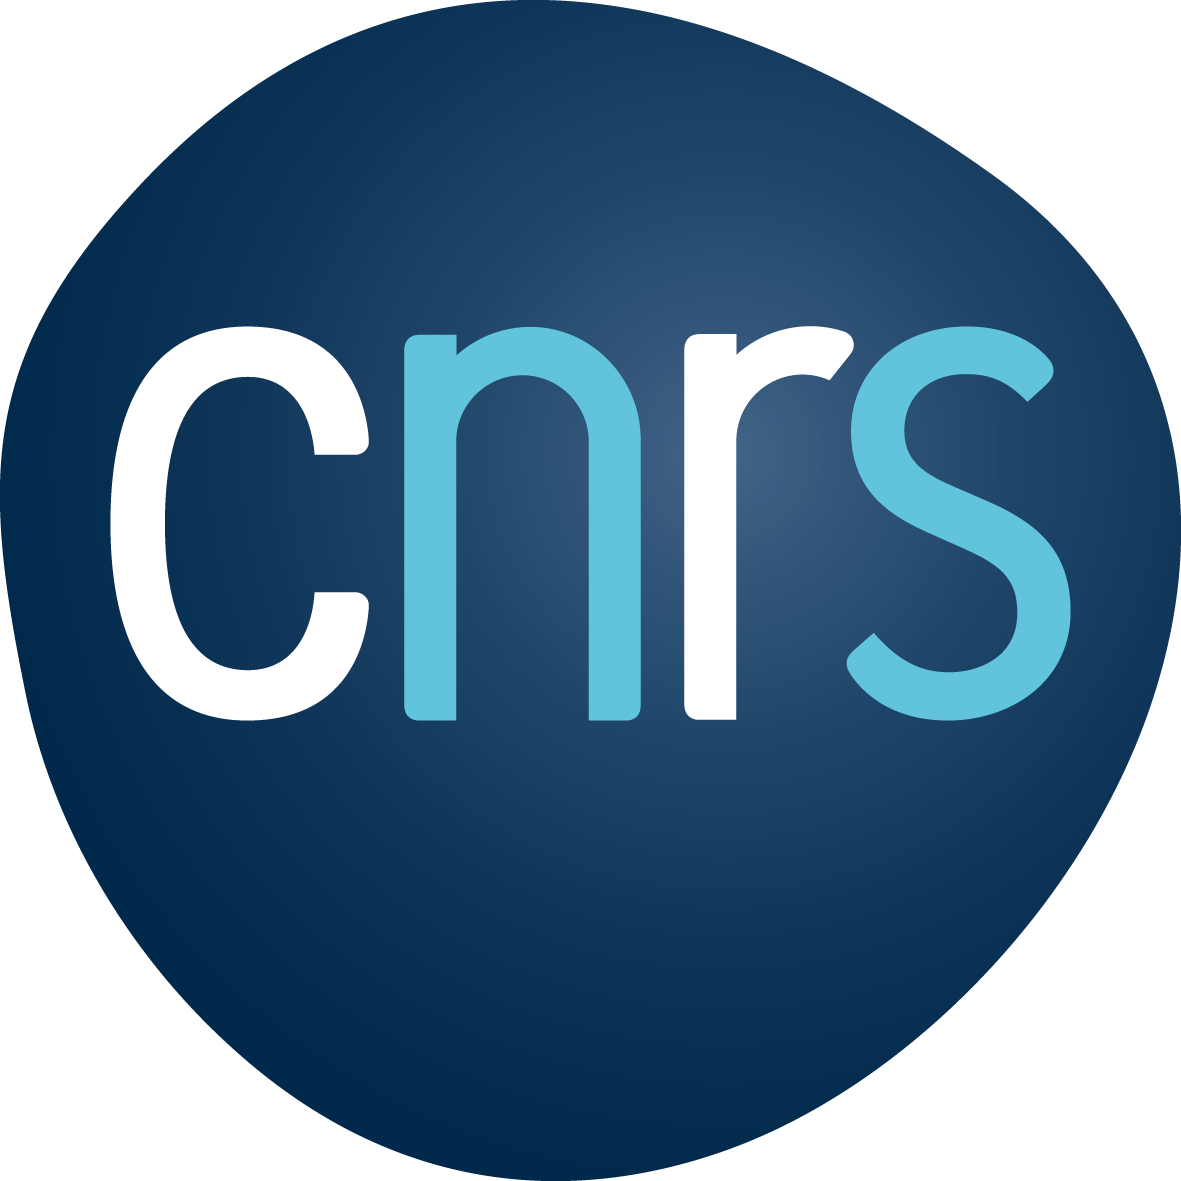 CNRS - INSU